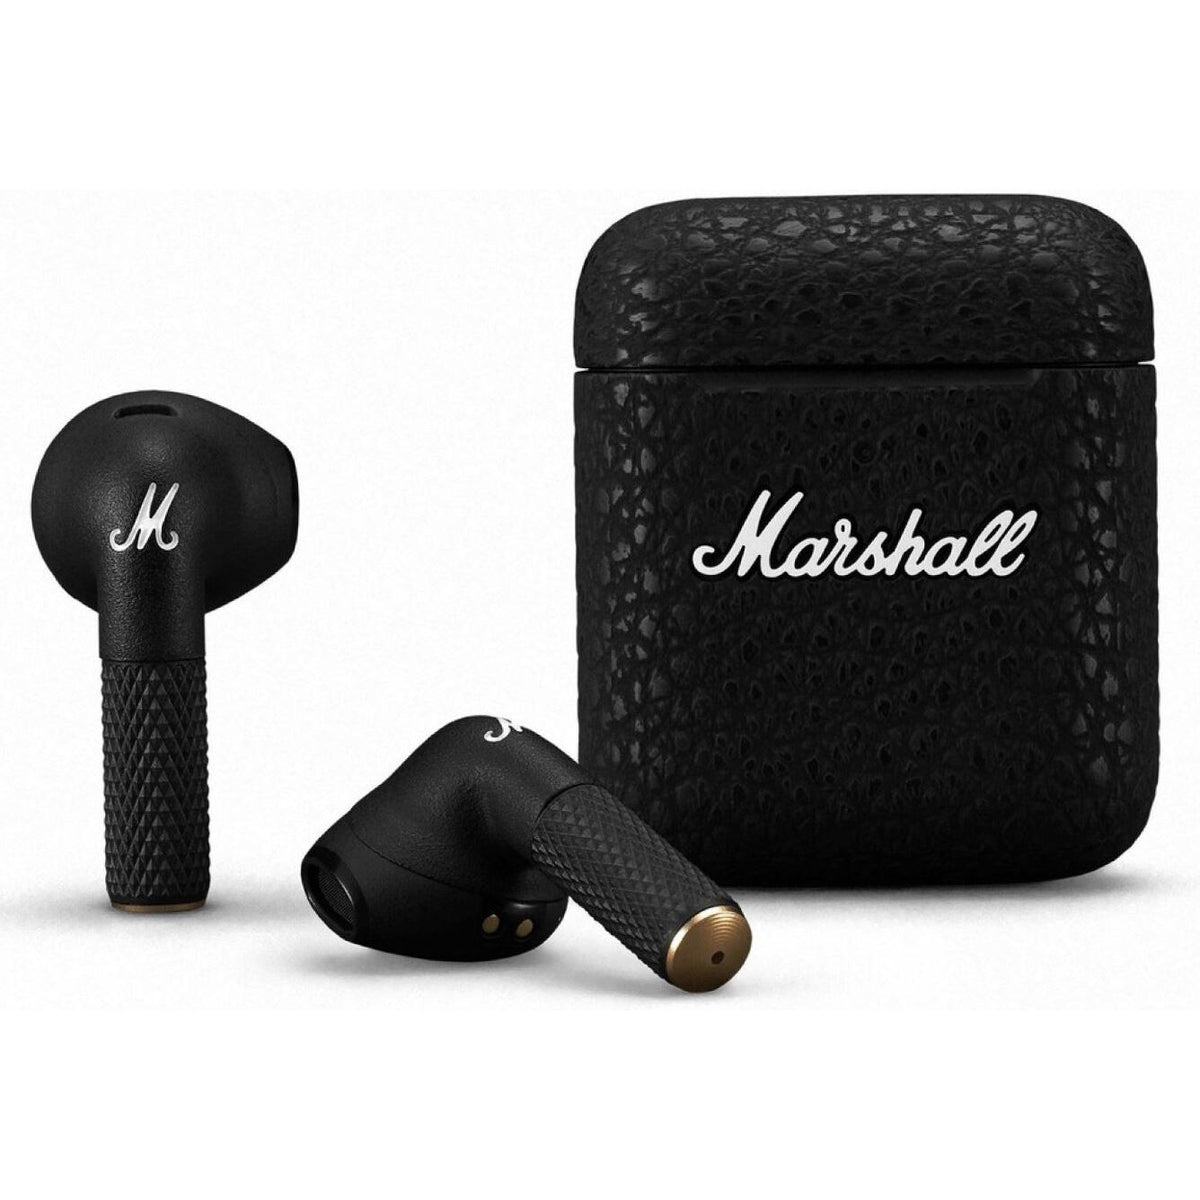 True Wireless sluchátka Marshall Minor III, černá POUŽITÉ, NEOPOTŘEBENÉ ZBOŽÍ